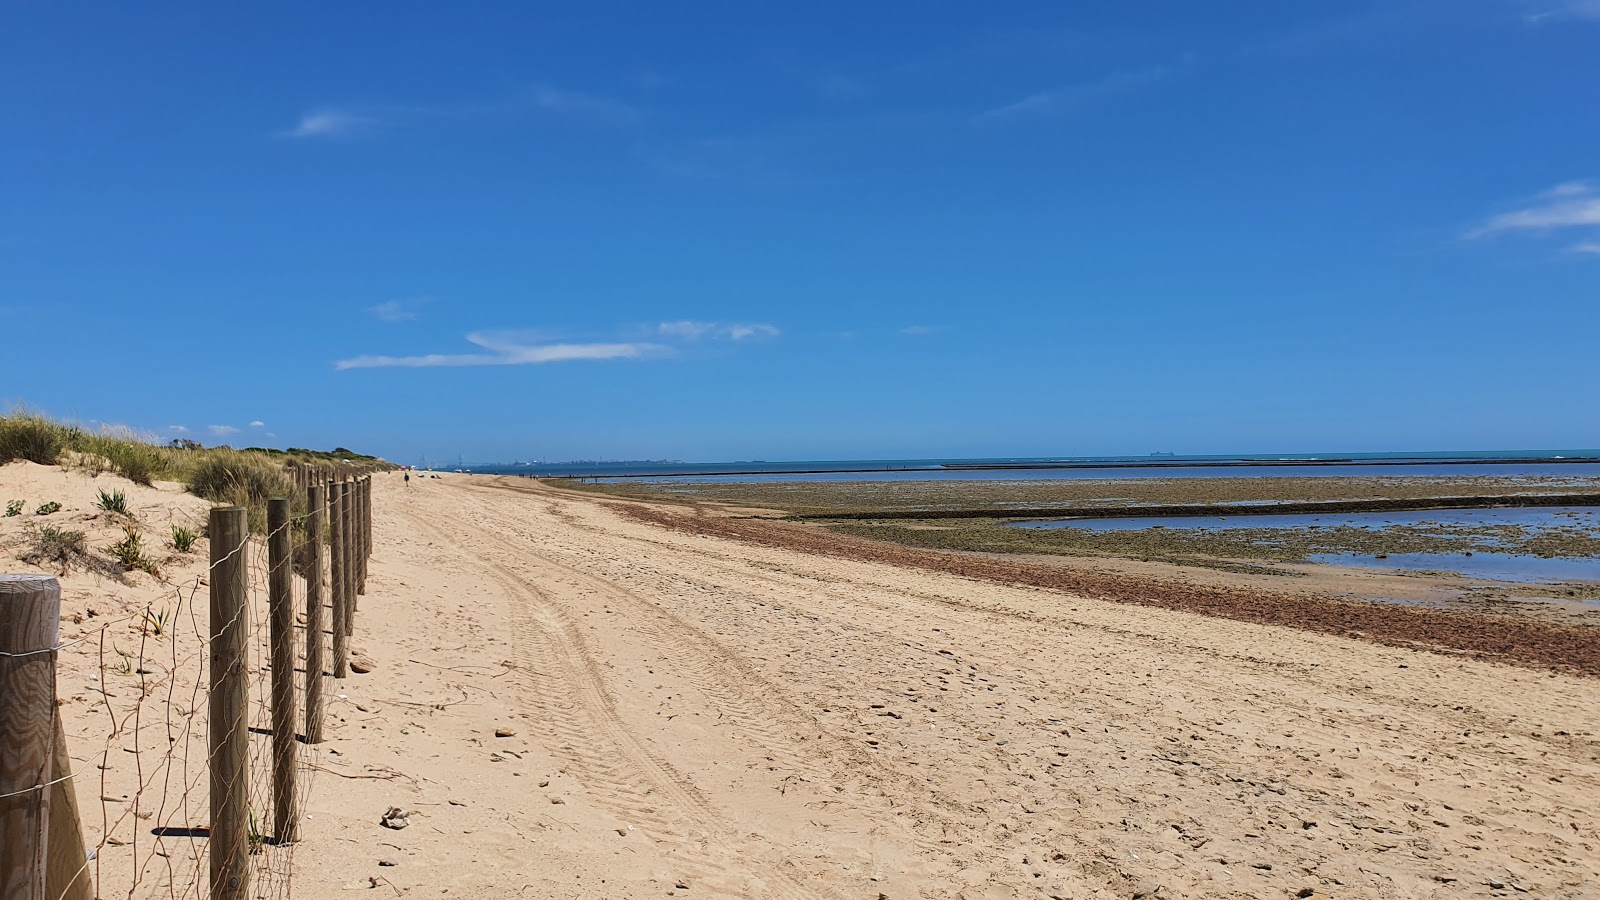 Foto von Rota Strand mit langer gerader strand